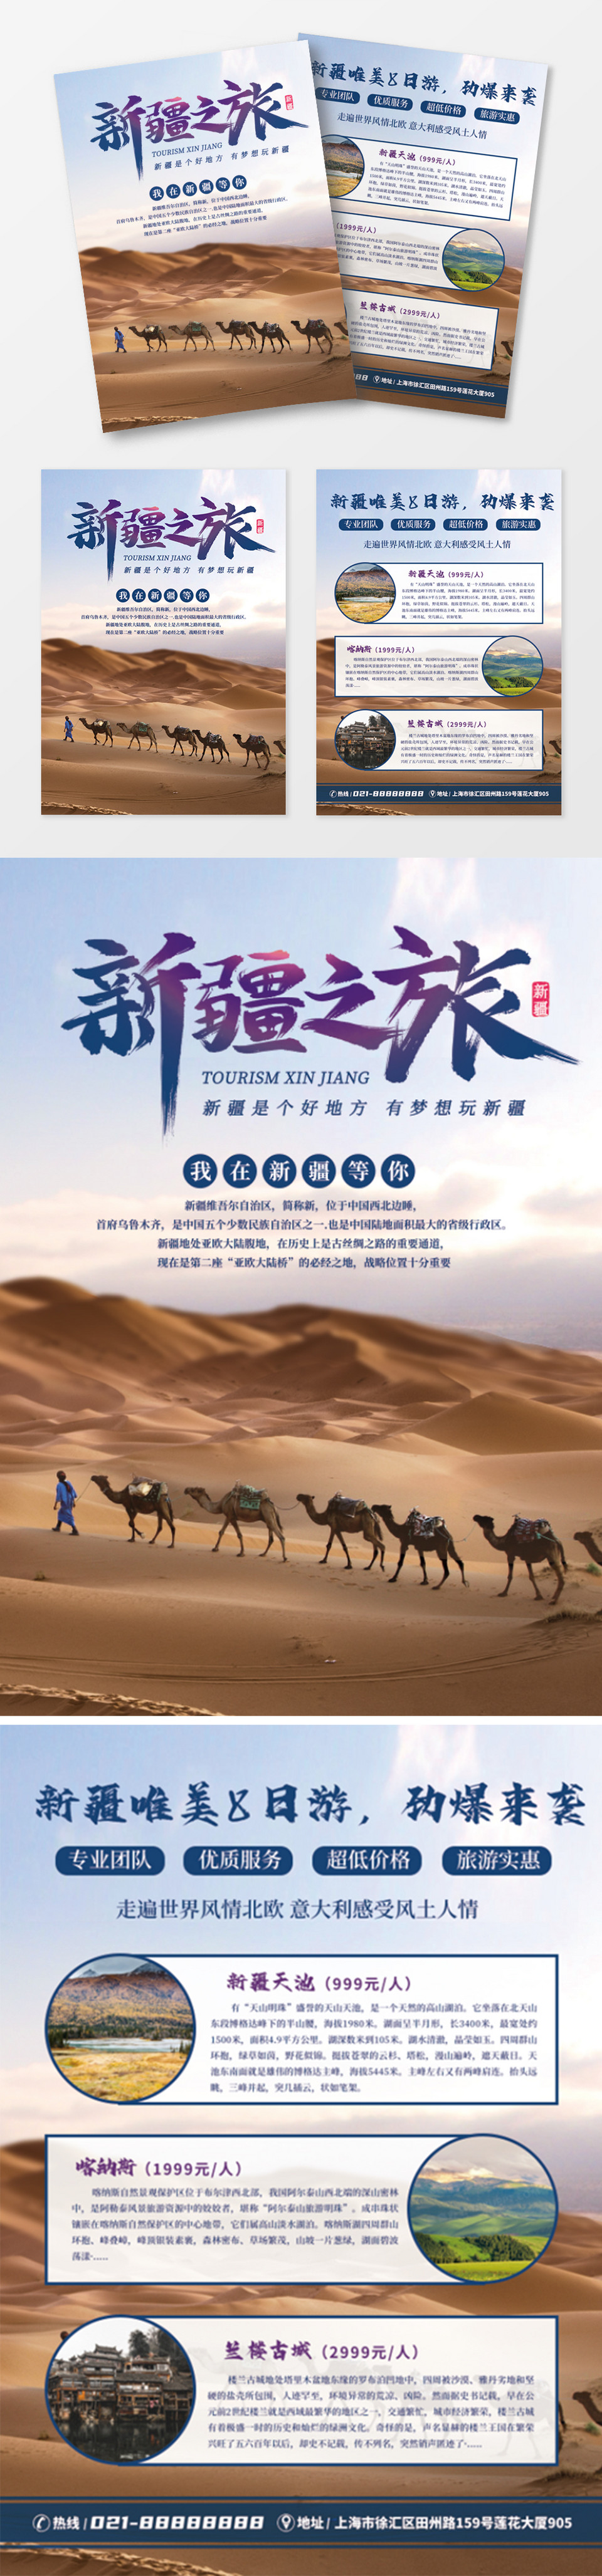 简约新疆旅游双页宣传单设计模板